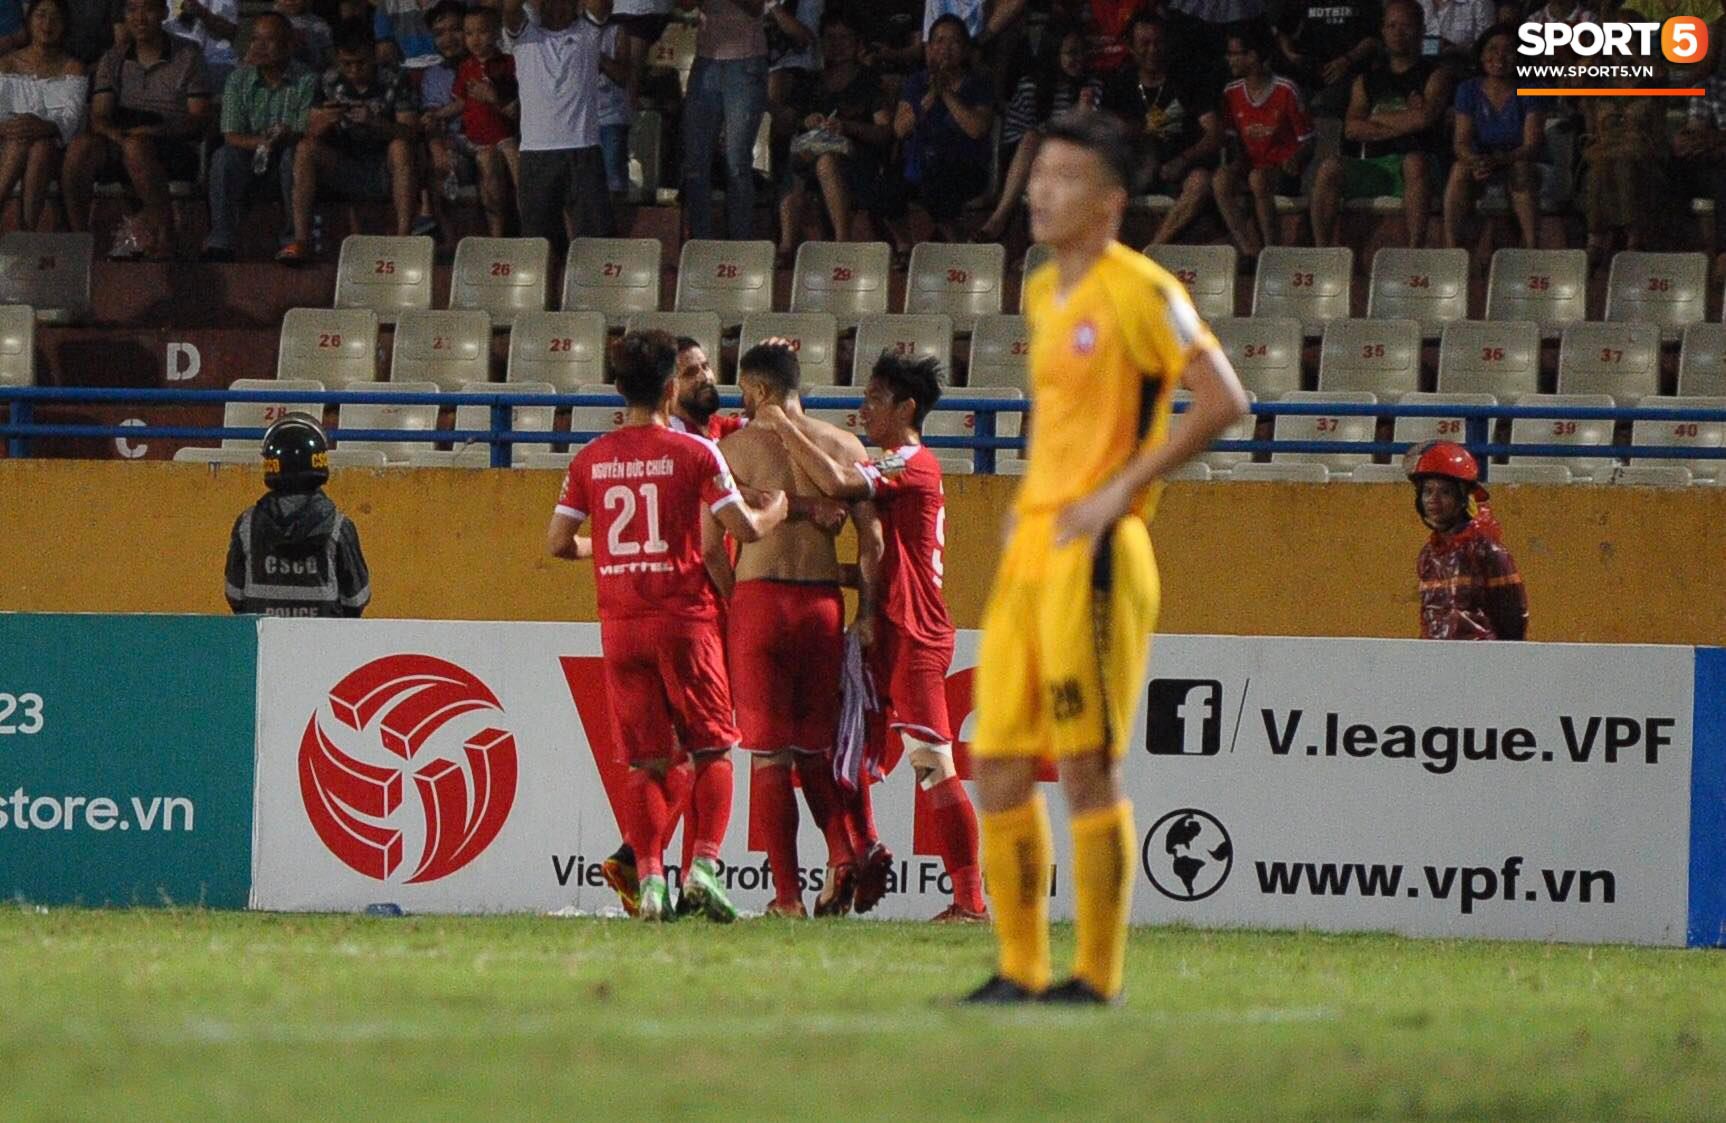 Thủ môn trẻ tài năng của U23 Việt Nam nhận lời cảnh báo sau trận thuỷ chiến trên sân Hàng Đẫy - Ảnh 9.